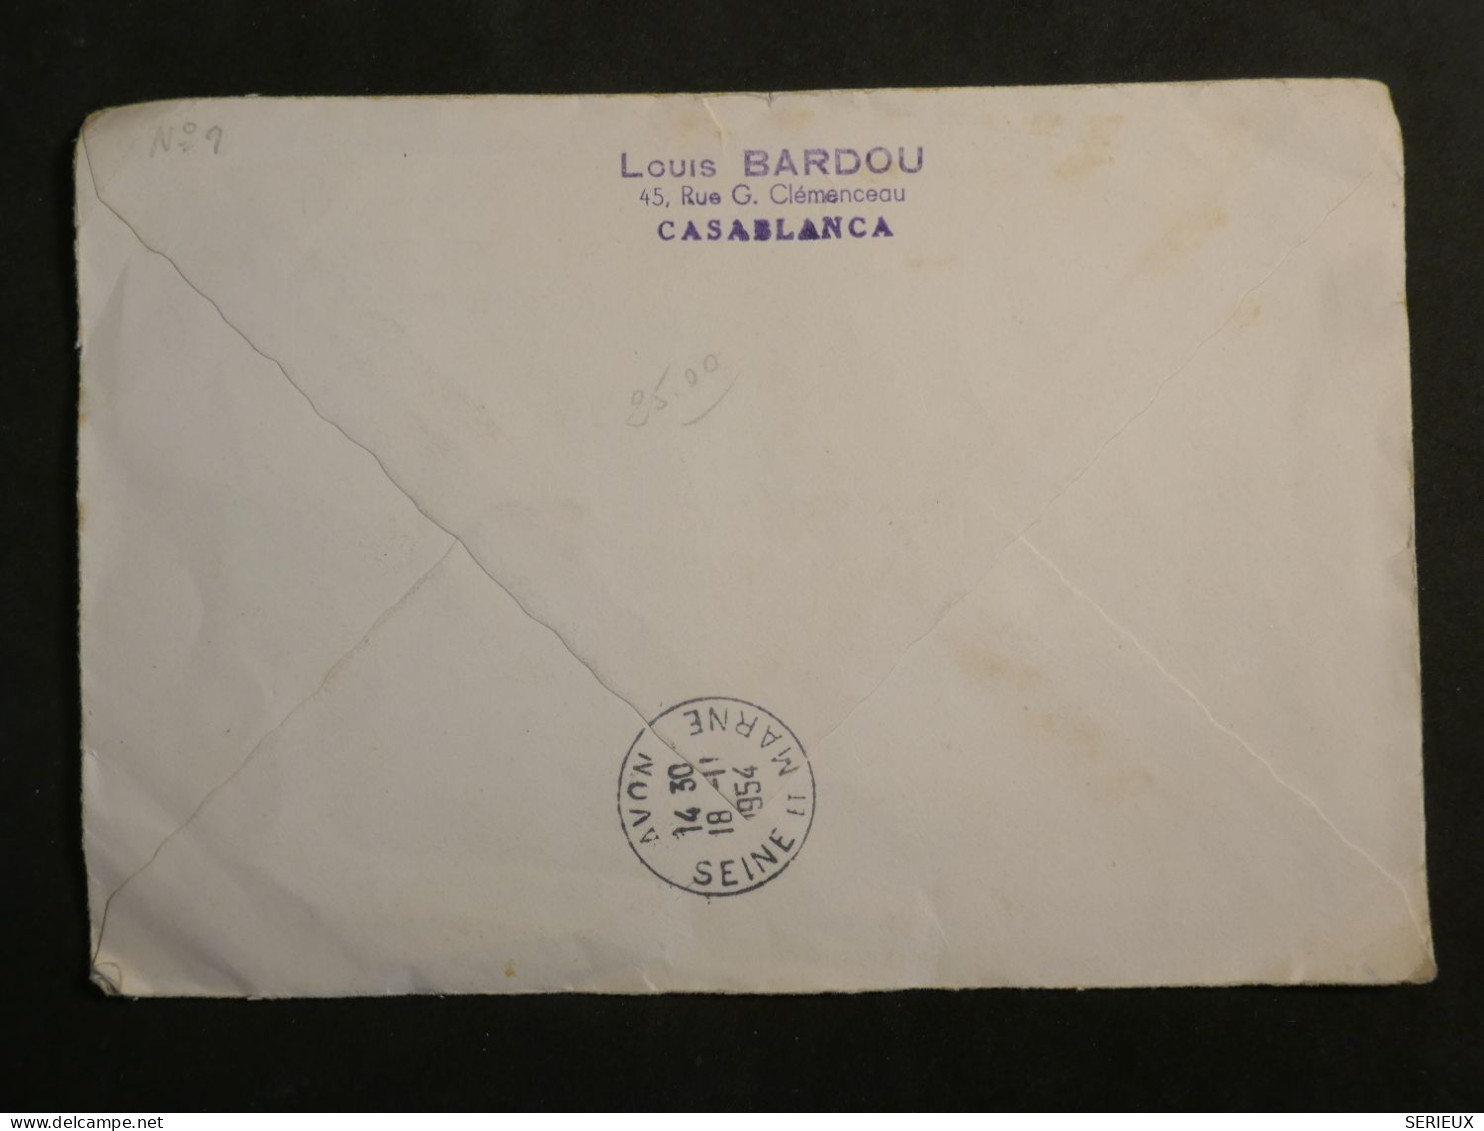 DL0  MAROC  LETTRE RR  1934  CASABLANCA  A  AVON  FRANCE + +AFF.  INTERESSANT+ + - Lettres & Documents